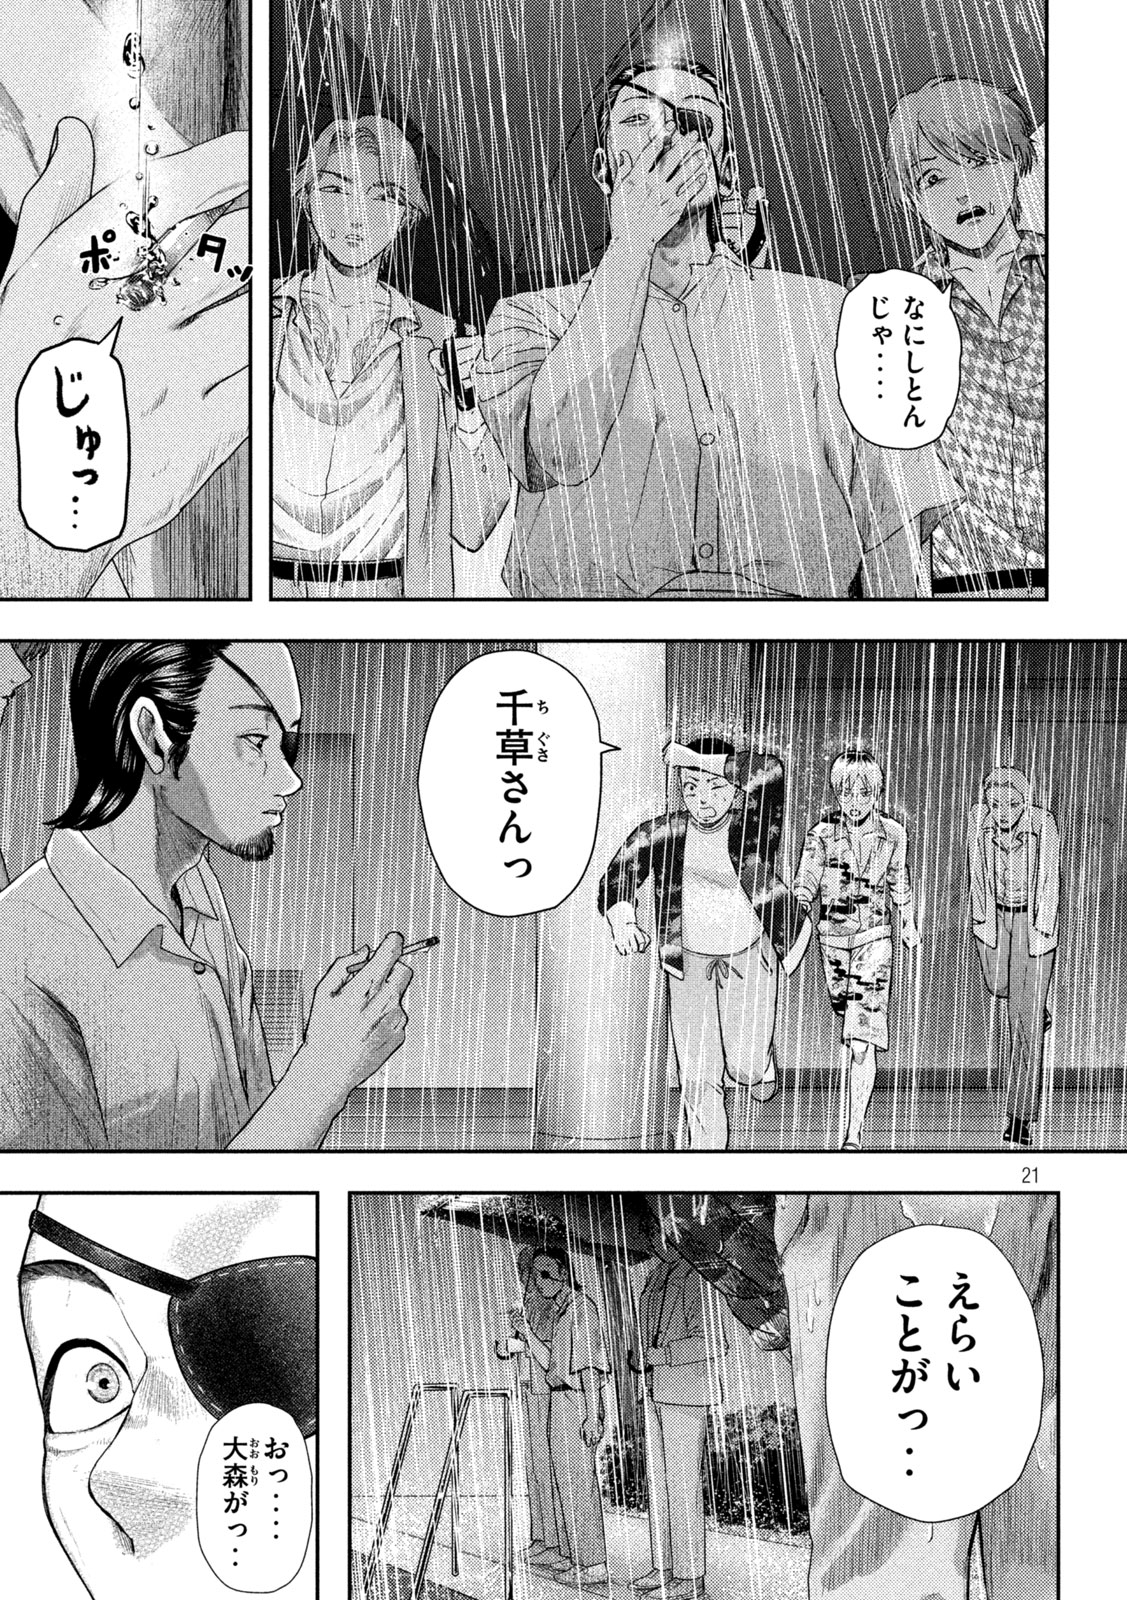 Nezumi no Koi - Chapter 17 - Page 21